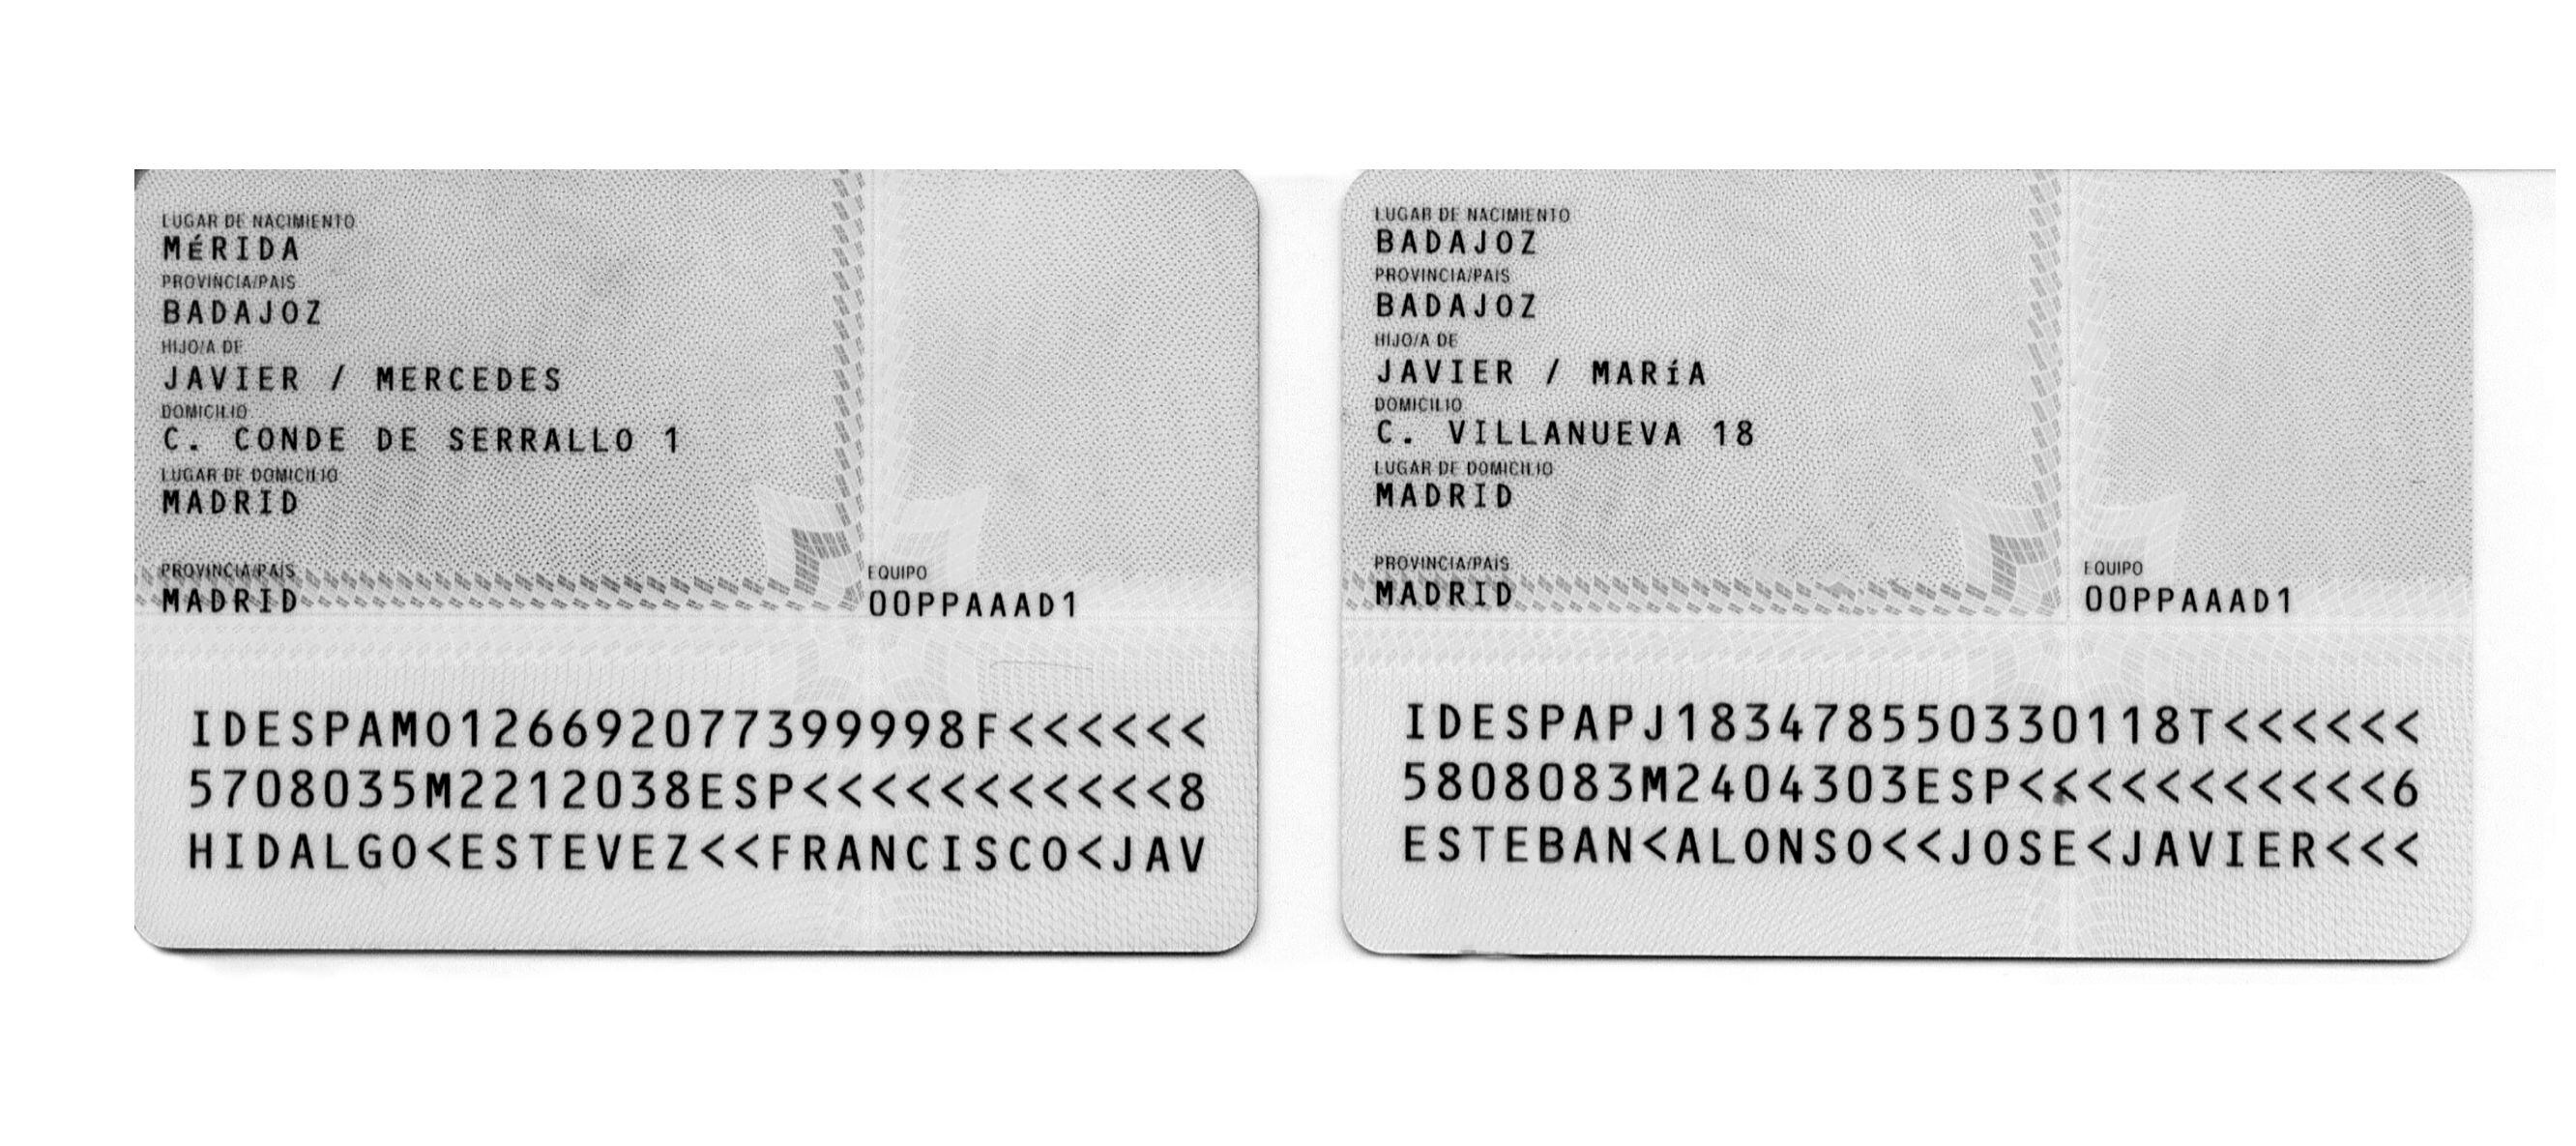 Reverso de los DNI falsos de Villarejo a nombre de Francisco Javier Hidalgo Estévez y José Javier Esteban Alonso. 